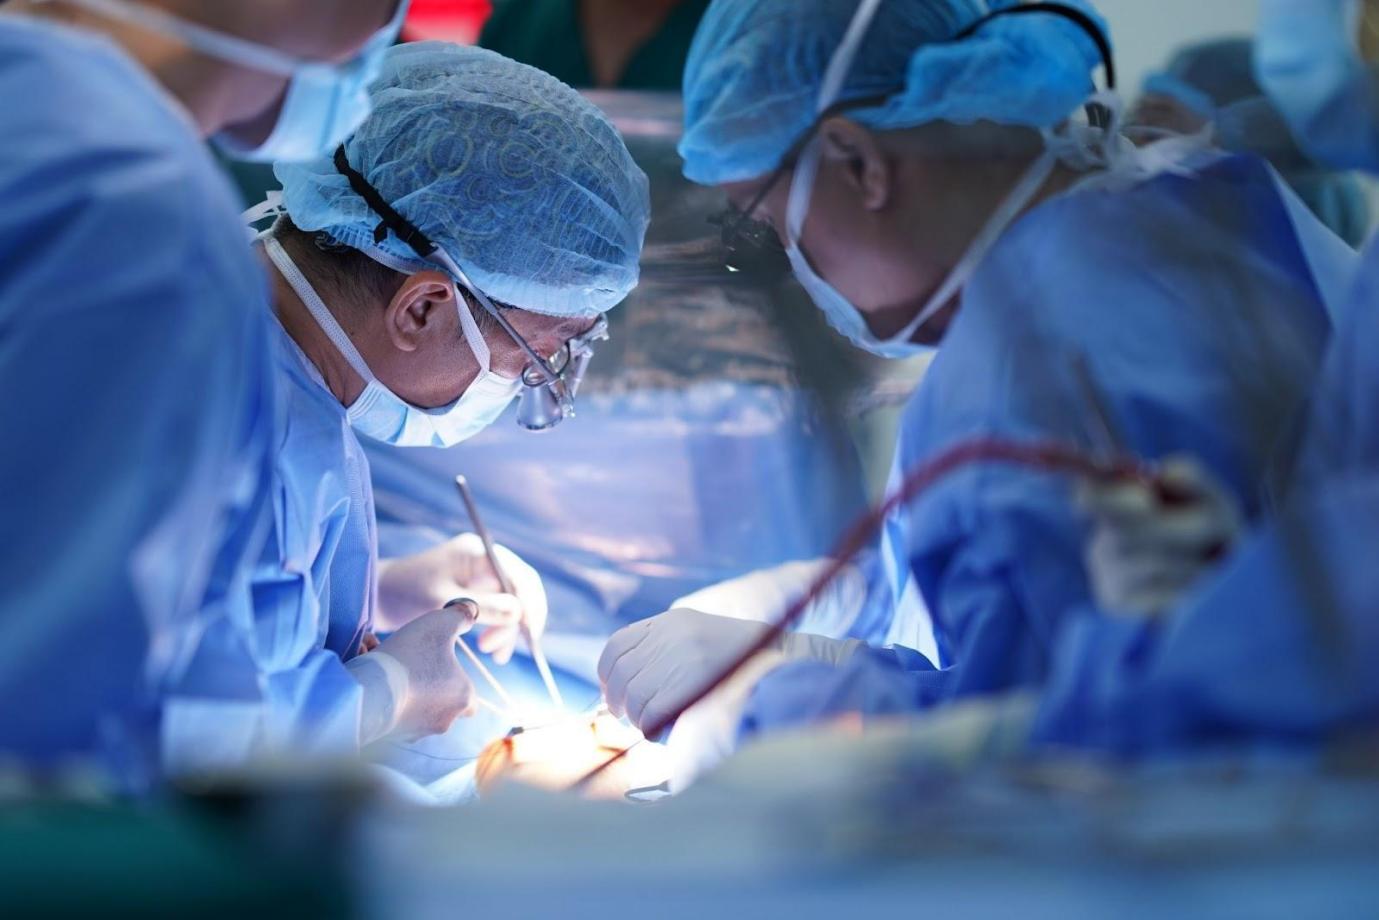 Bệnh viện Đa khoa Tâm Anh cứu thai nhi dị tật tim bẩm sinh nặng hiếm gặp - Ảnh 2.